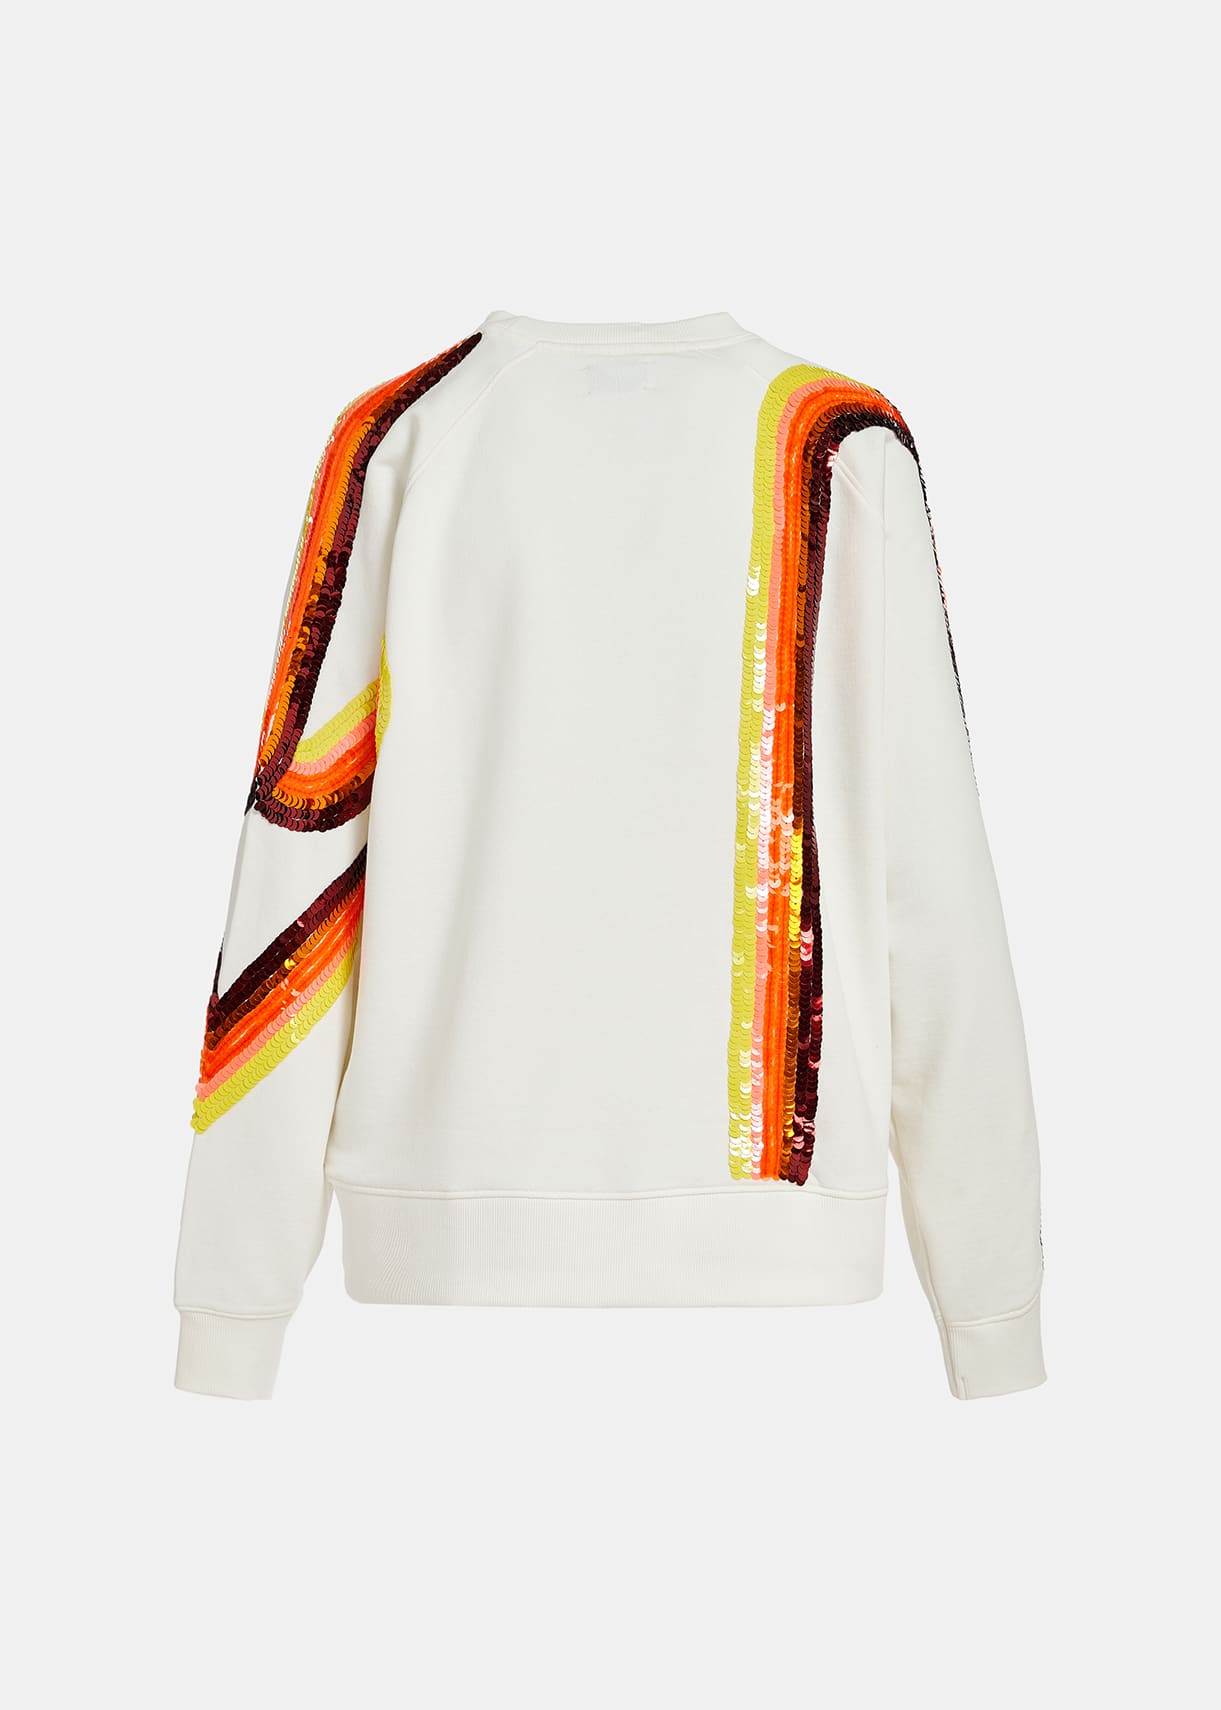 Filicudi - Cremeweißes Sweatshirt mit mehrfarbiger Paillettenstickerei